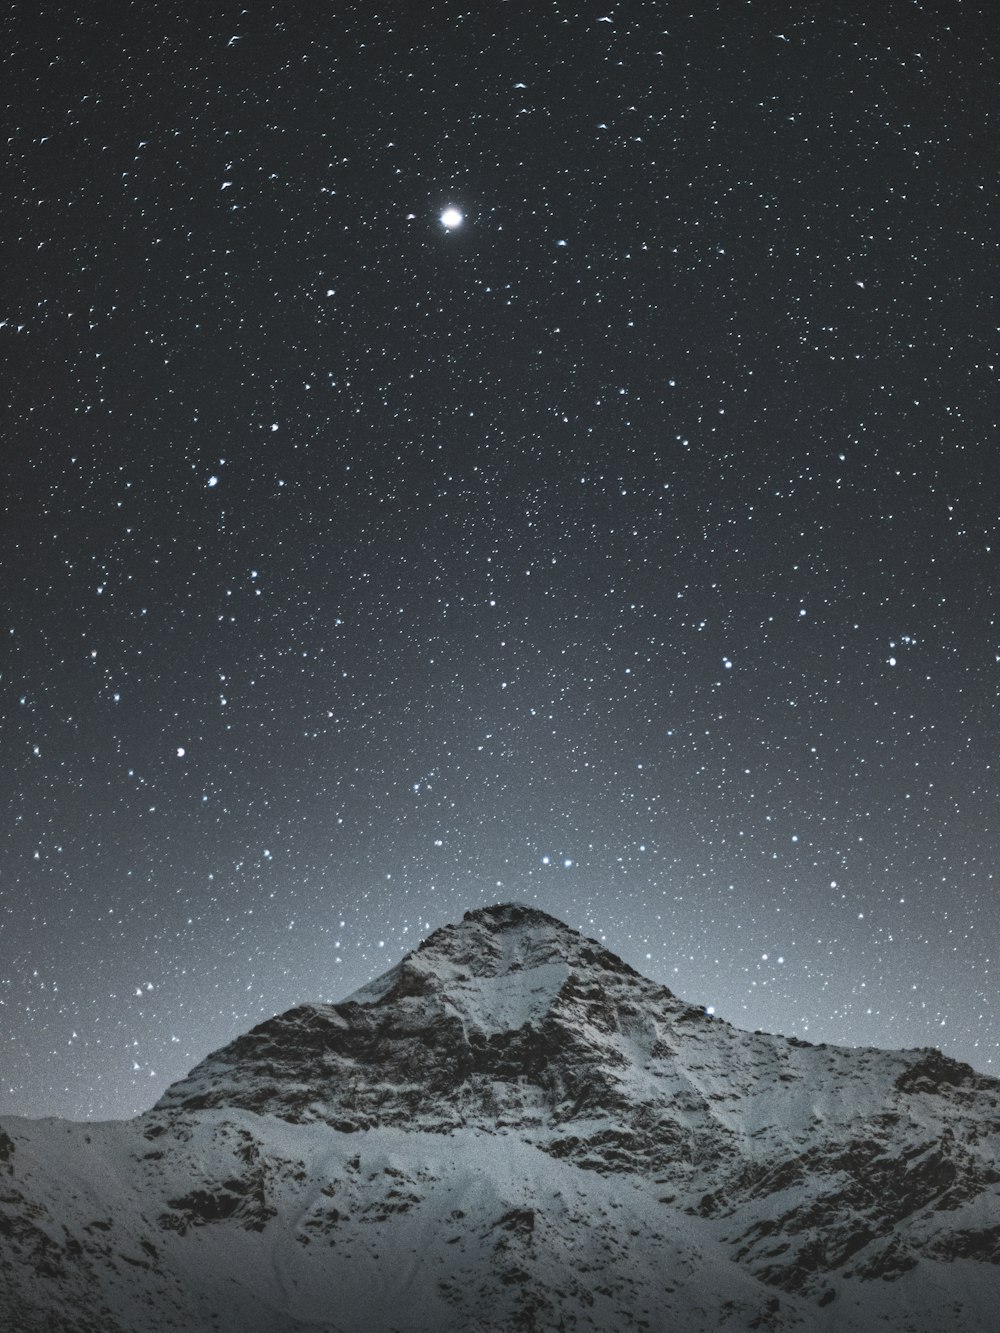 Montaña cubierta de nieve bajo la noche estrellada